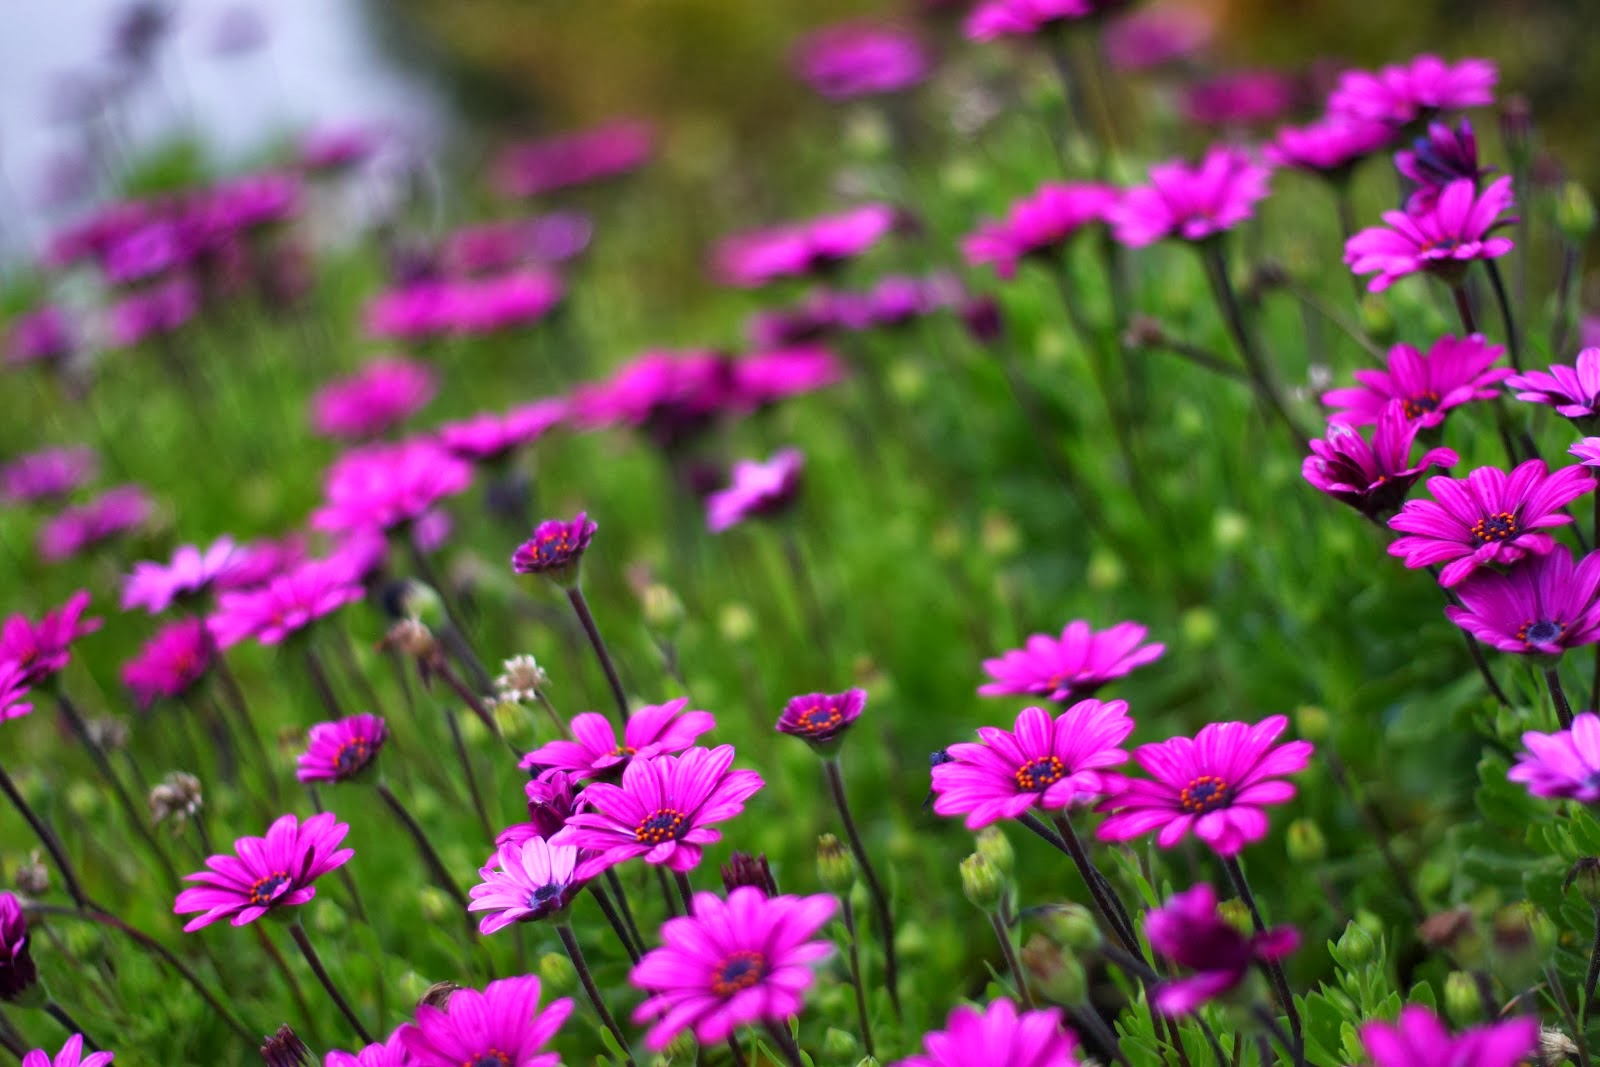 Hoa nhị cánh tím là một trong những loài hoa vô cùng đáng yêu và quyến rũ. Hãy chiêm ngưỡng những hình ảnh tuyệt đẹp về loài hoa này để cảm nhận được sự tinh tế và thanh lịch của chúng.